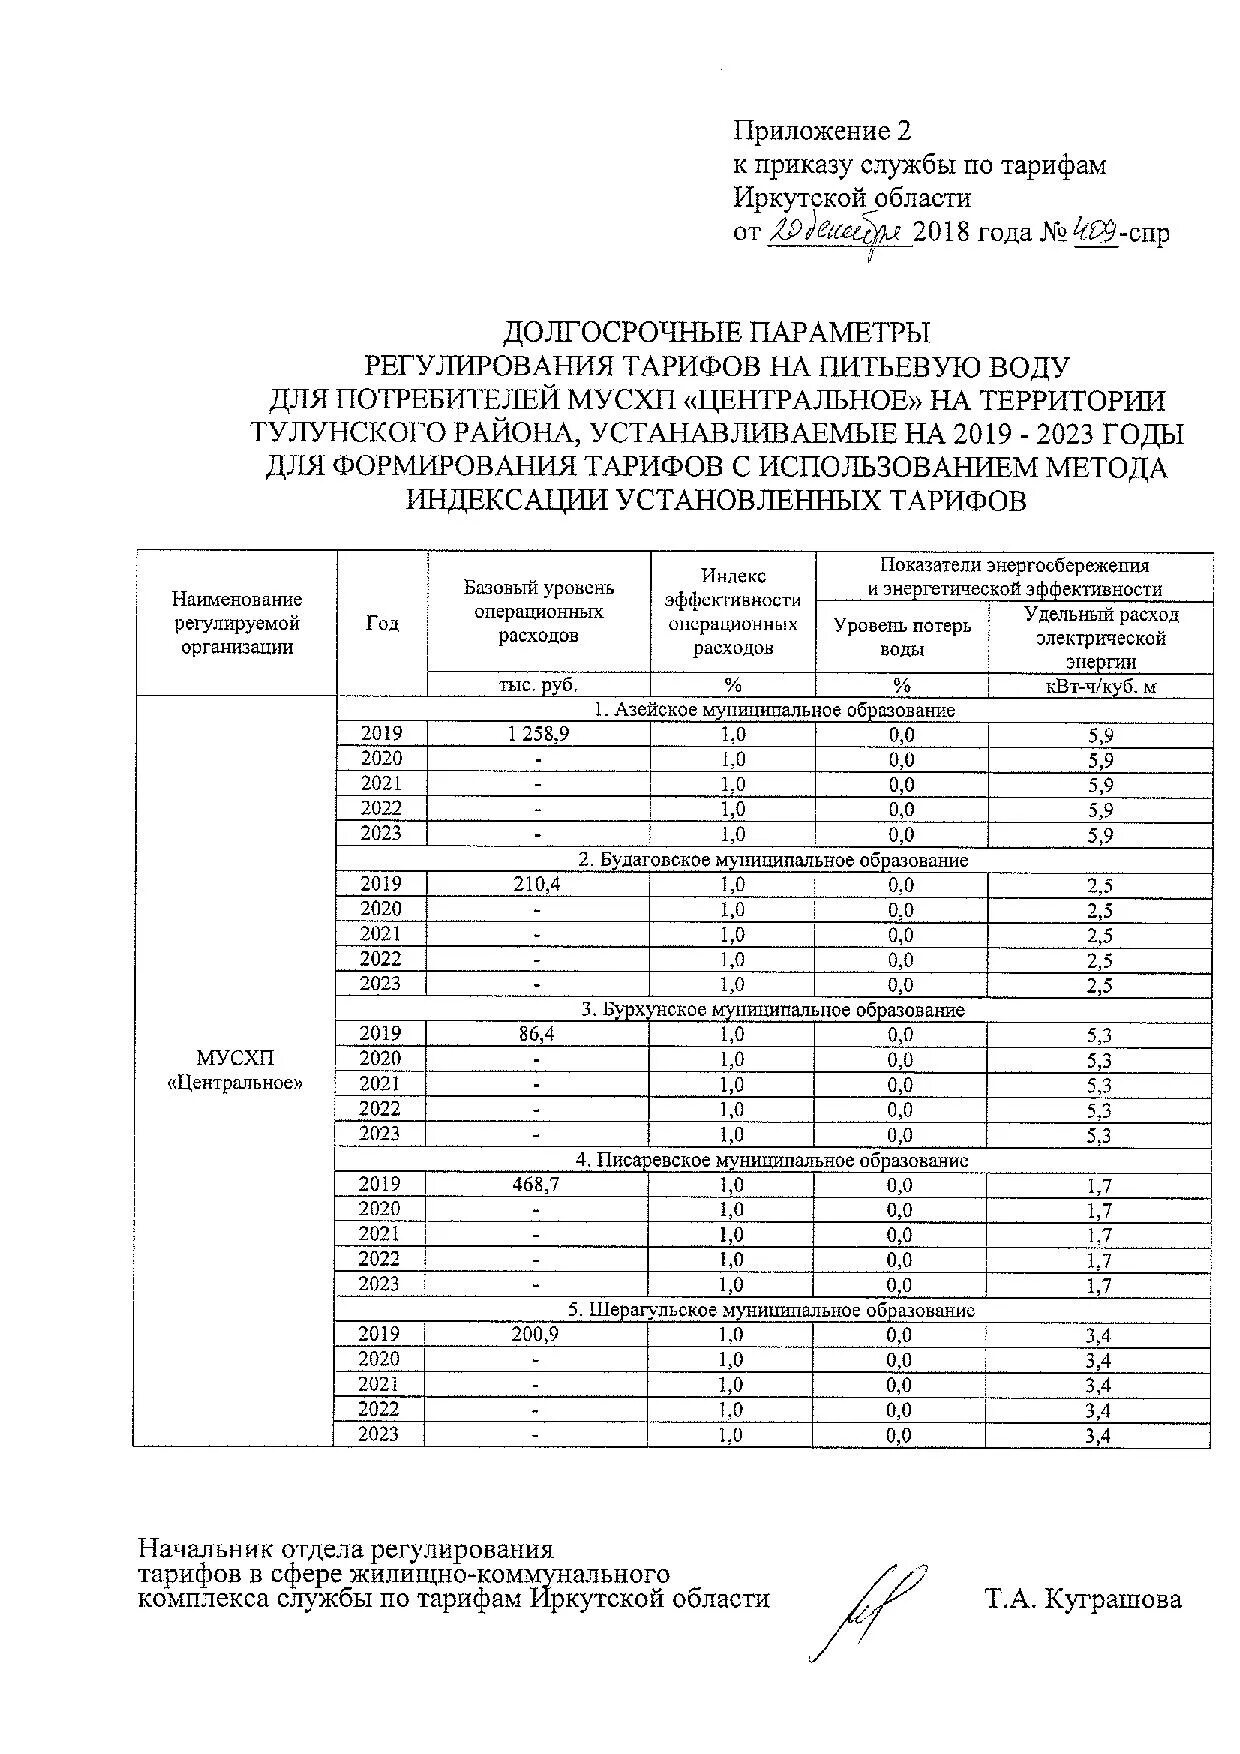 Приказы службы по тарифам иркутской области